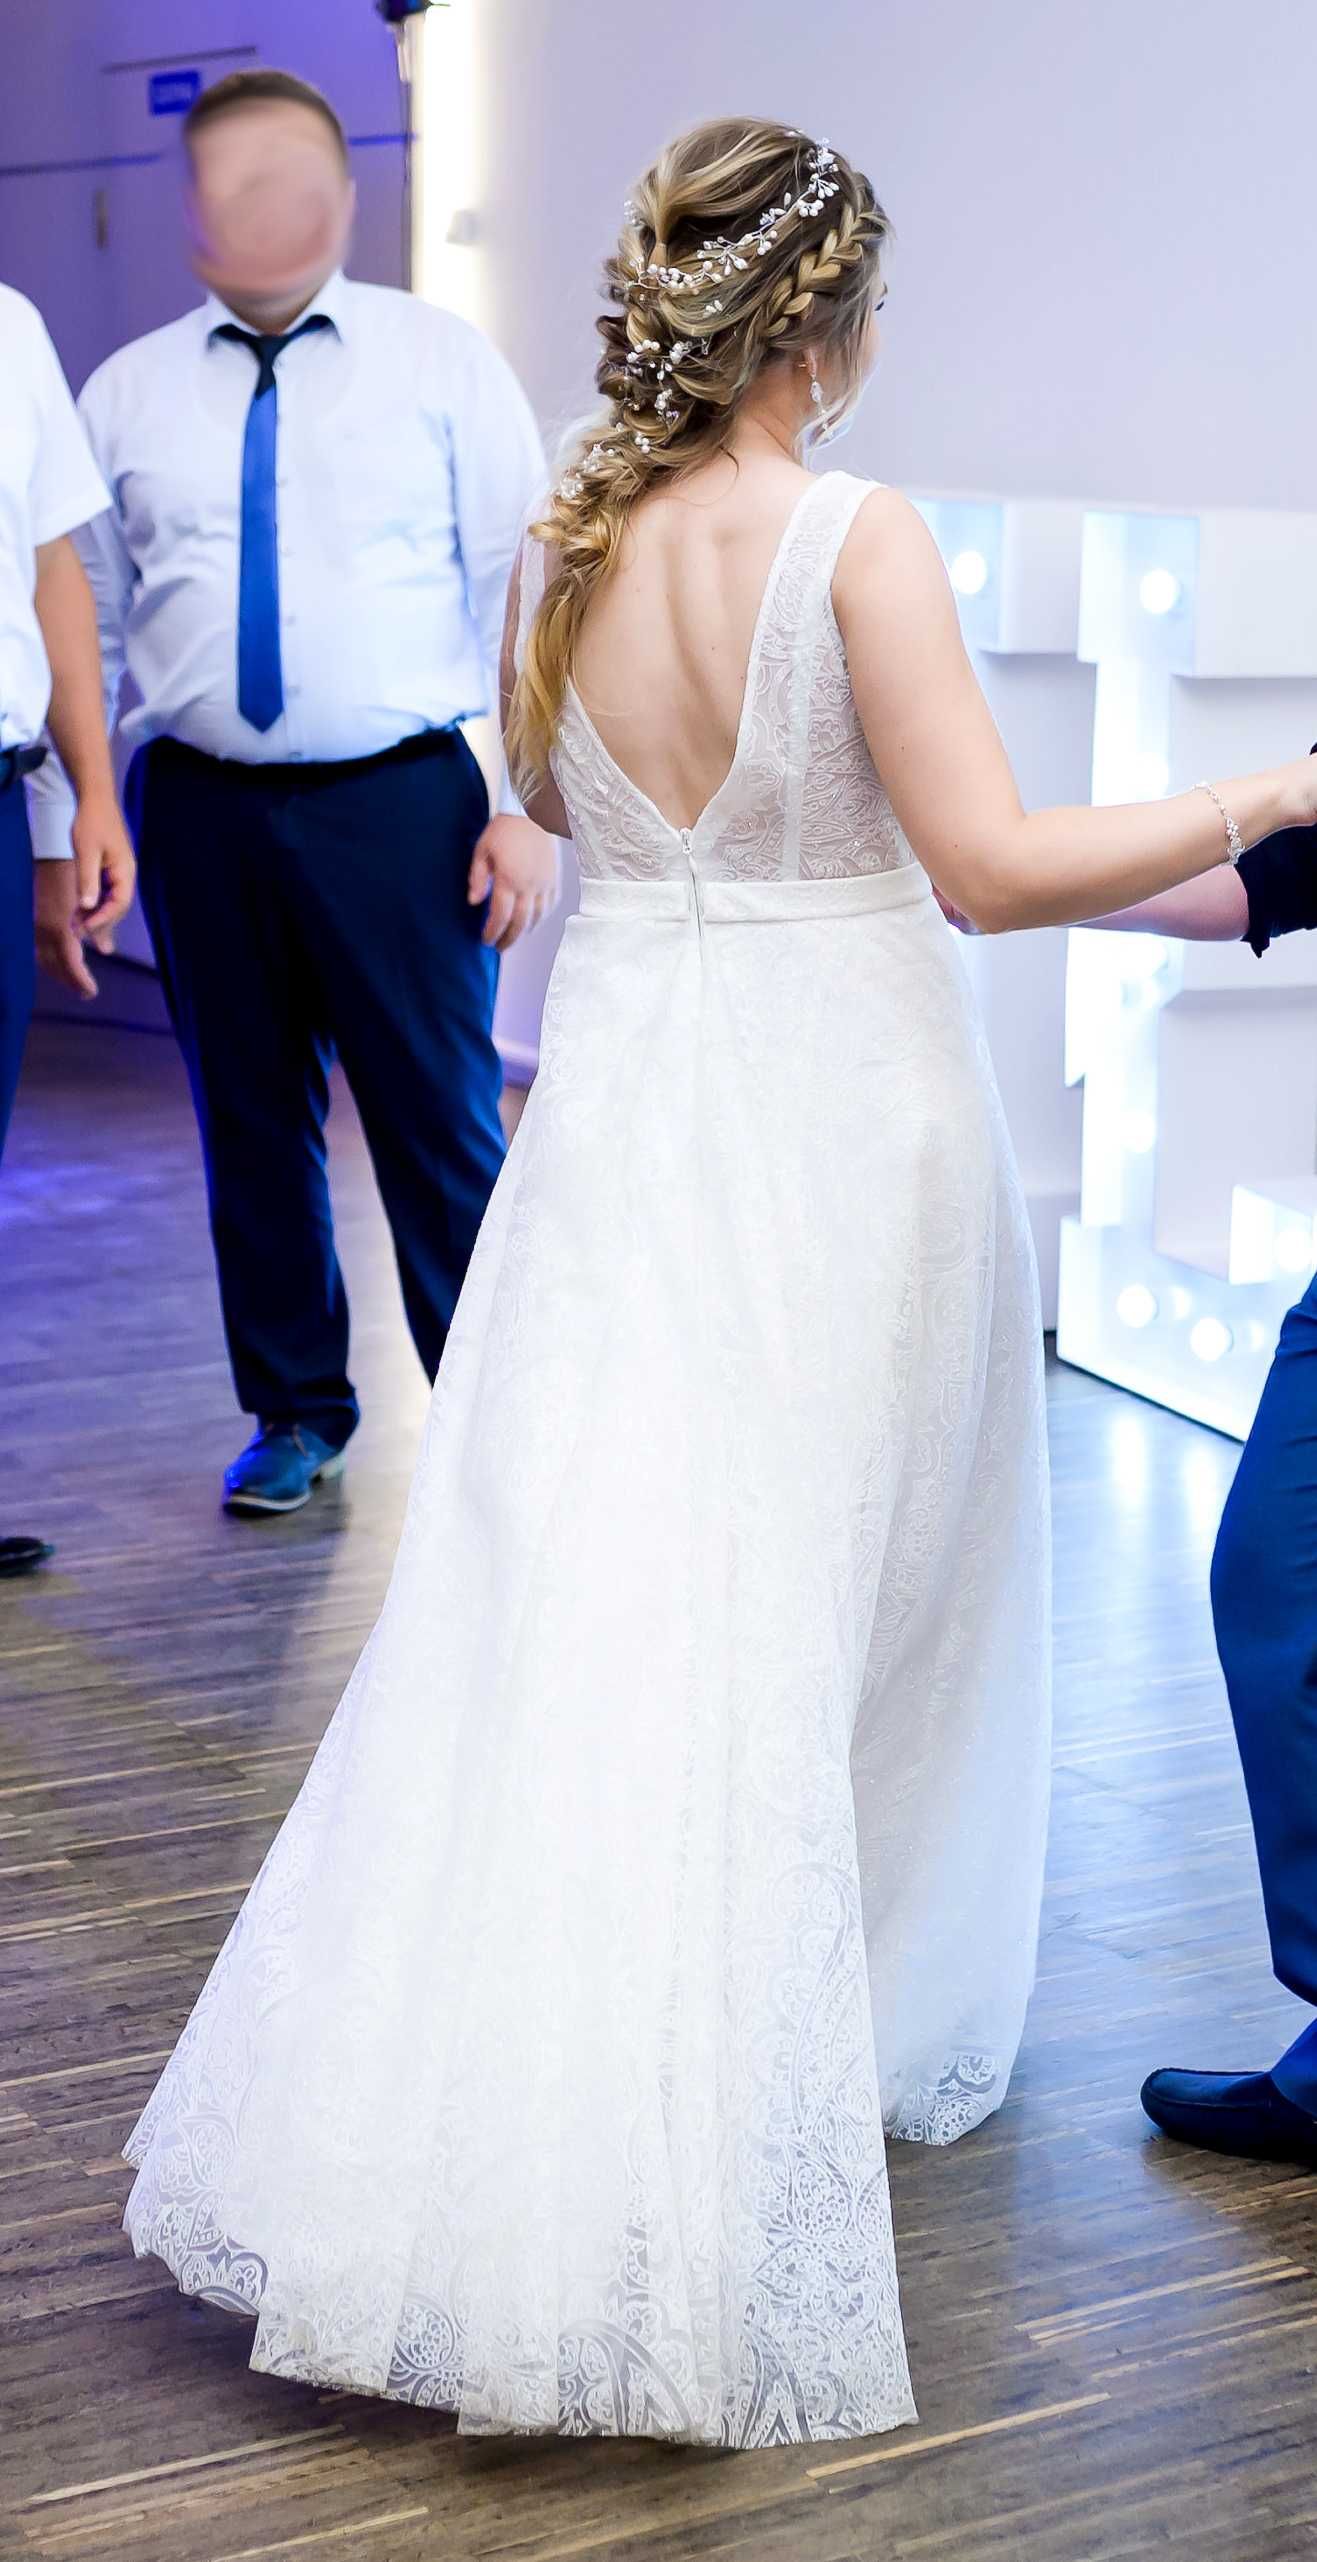 Suknia Ślubna wzrost 159cm + 9cm obcas.